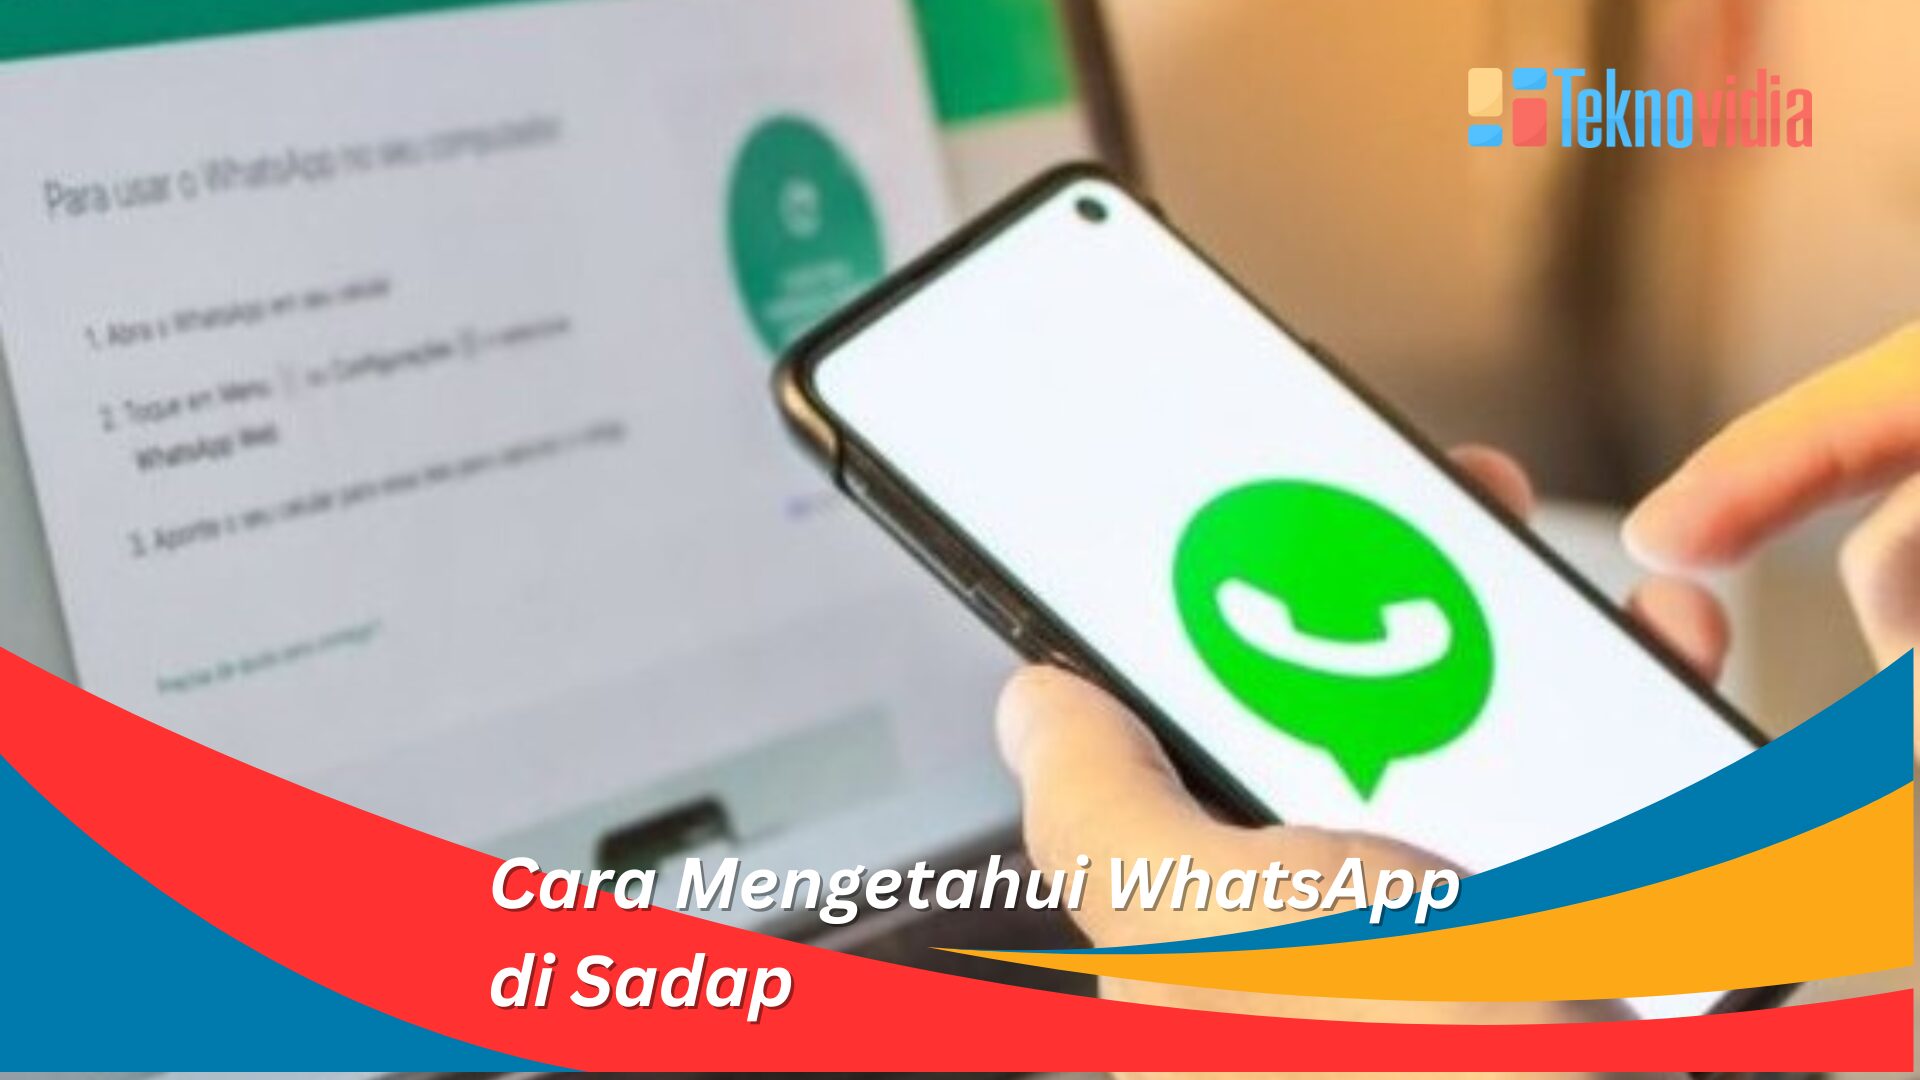 Cara Mengetahui WhatsApp di Sadap